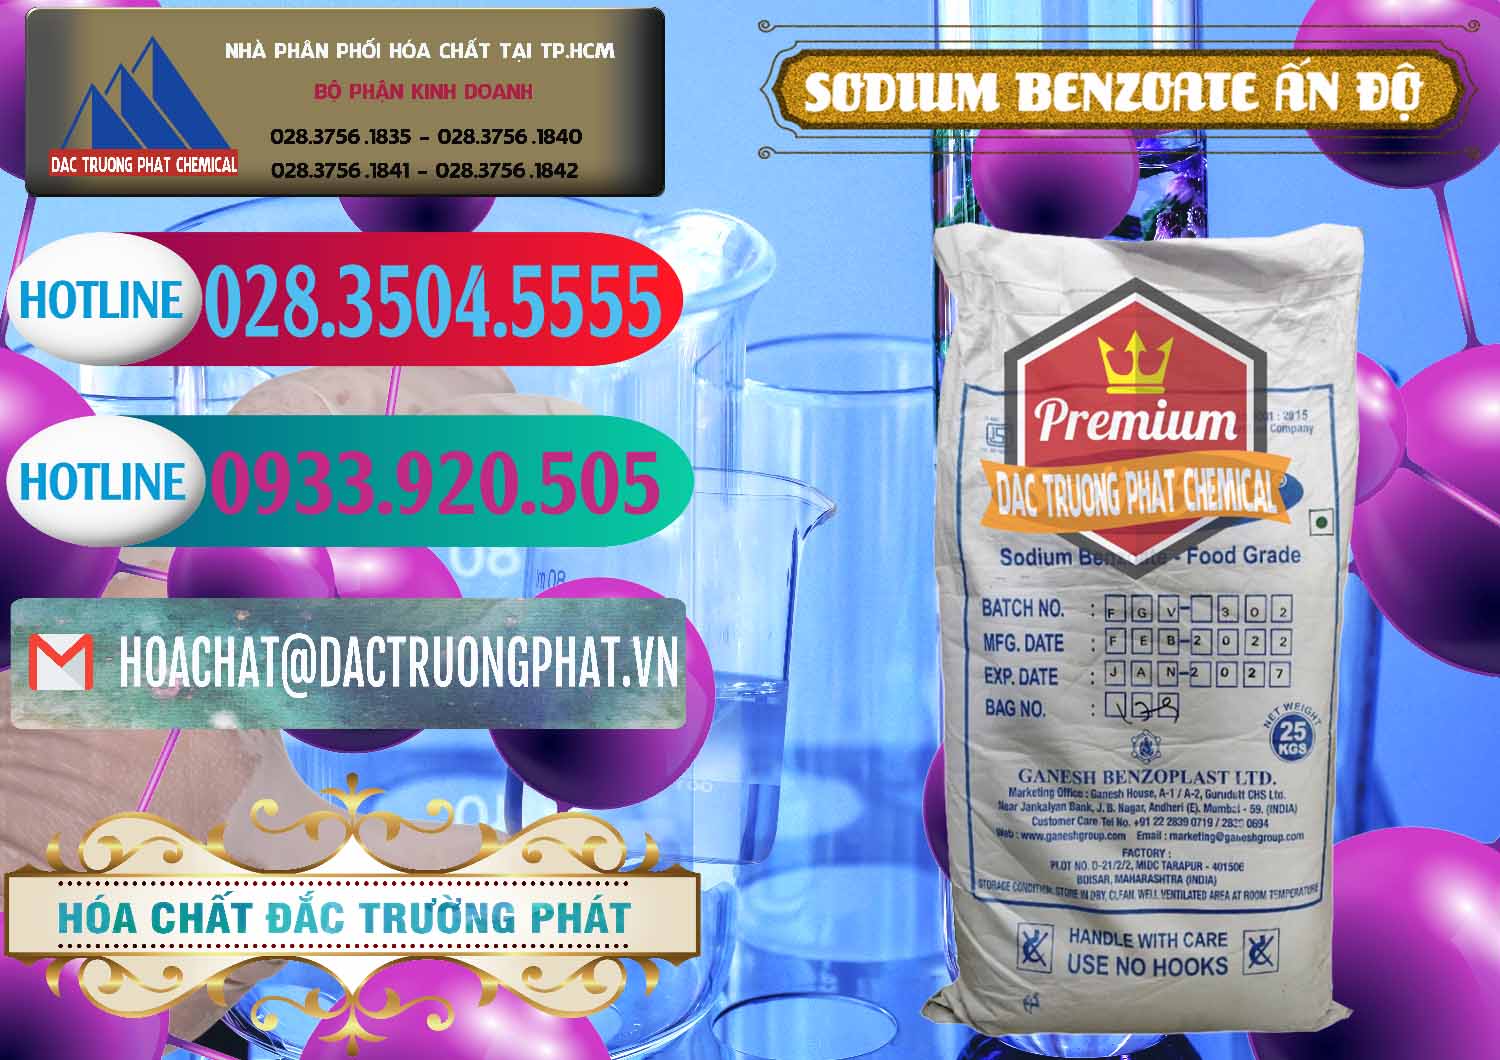 Cty bán và cung ứng Sodium Benzoate - Mốc Bột Ấn Độ India - 0361 - Công ty bán & cung cấp hóa chất tại TP.HCM - truongphat.vn